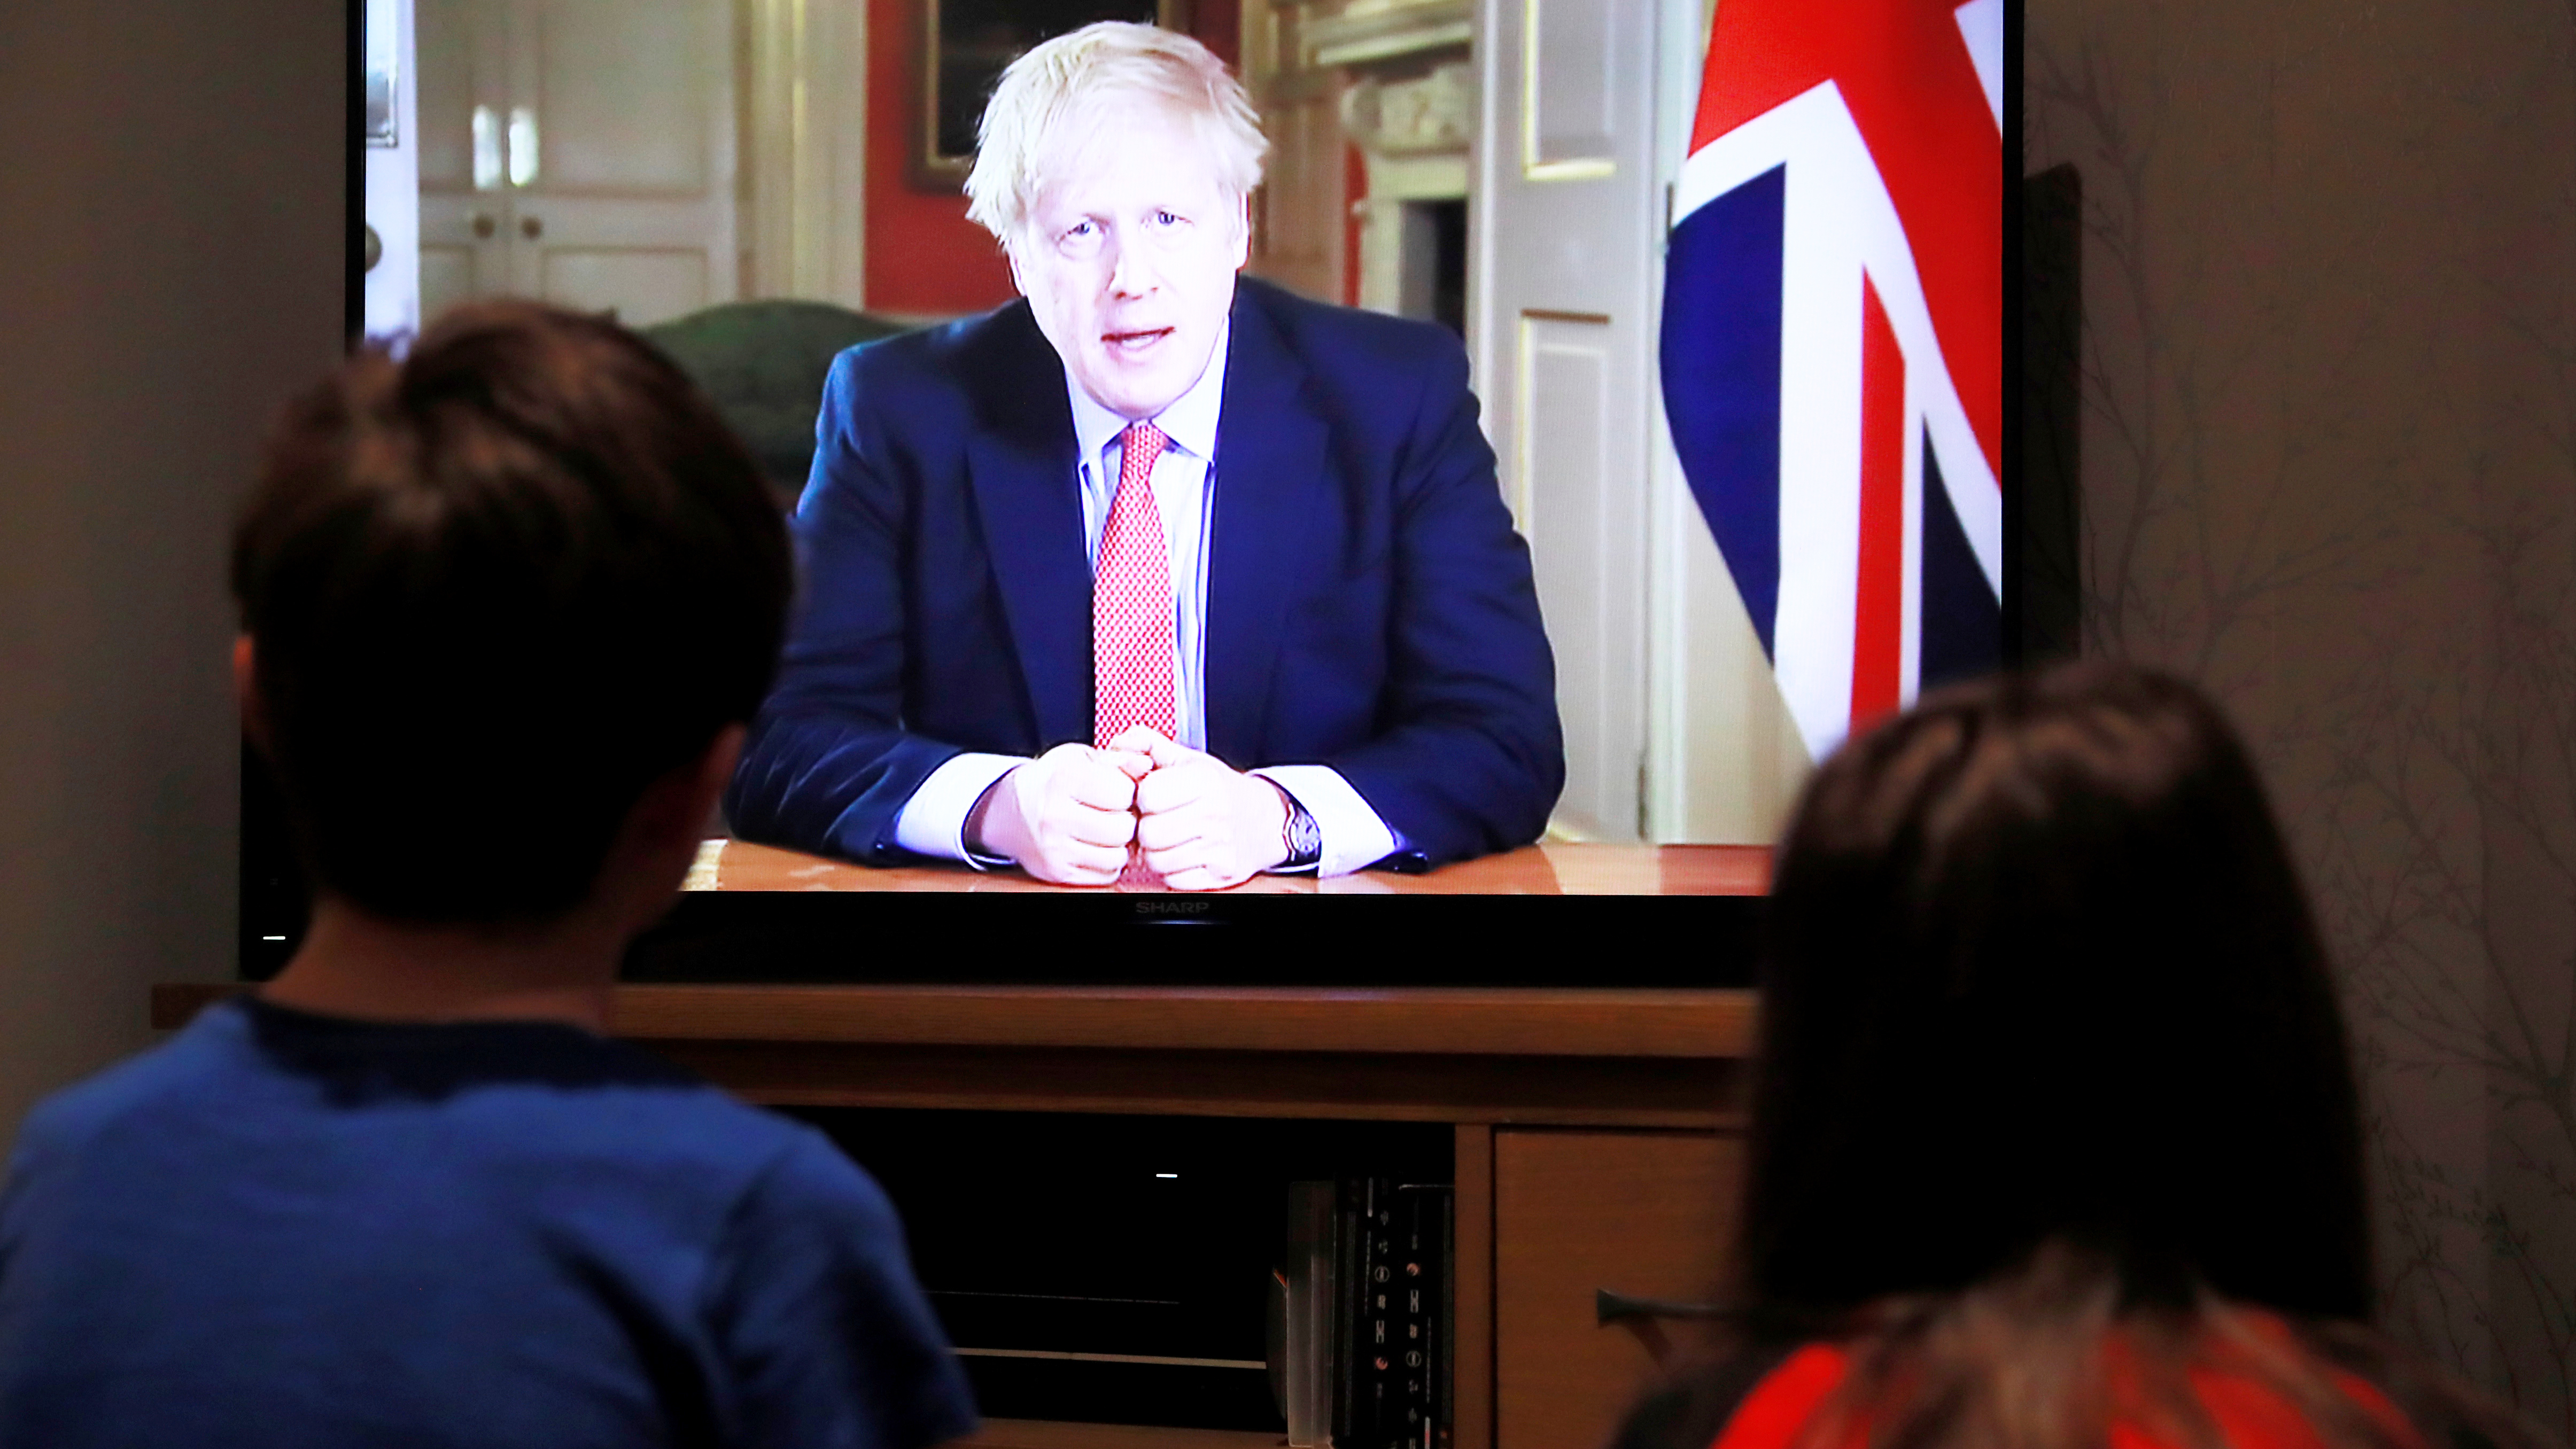 Zwei Kinder sitzen während der Fernsehansprache des britischen Premiers Boris Johnson vor dem Fernseher.